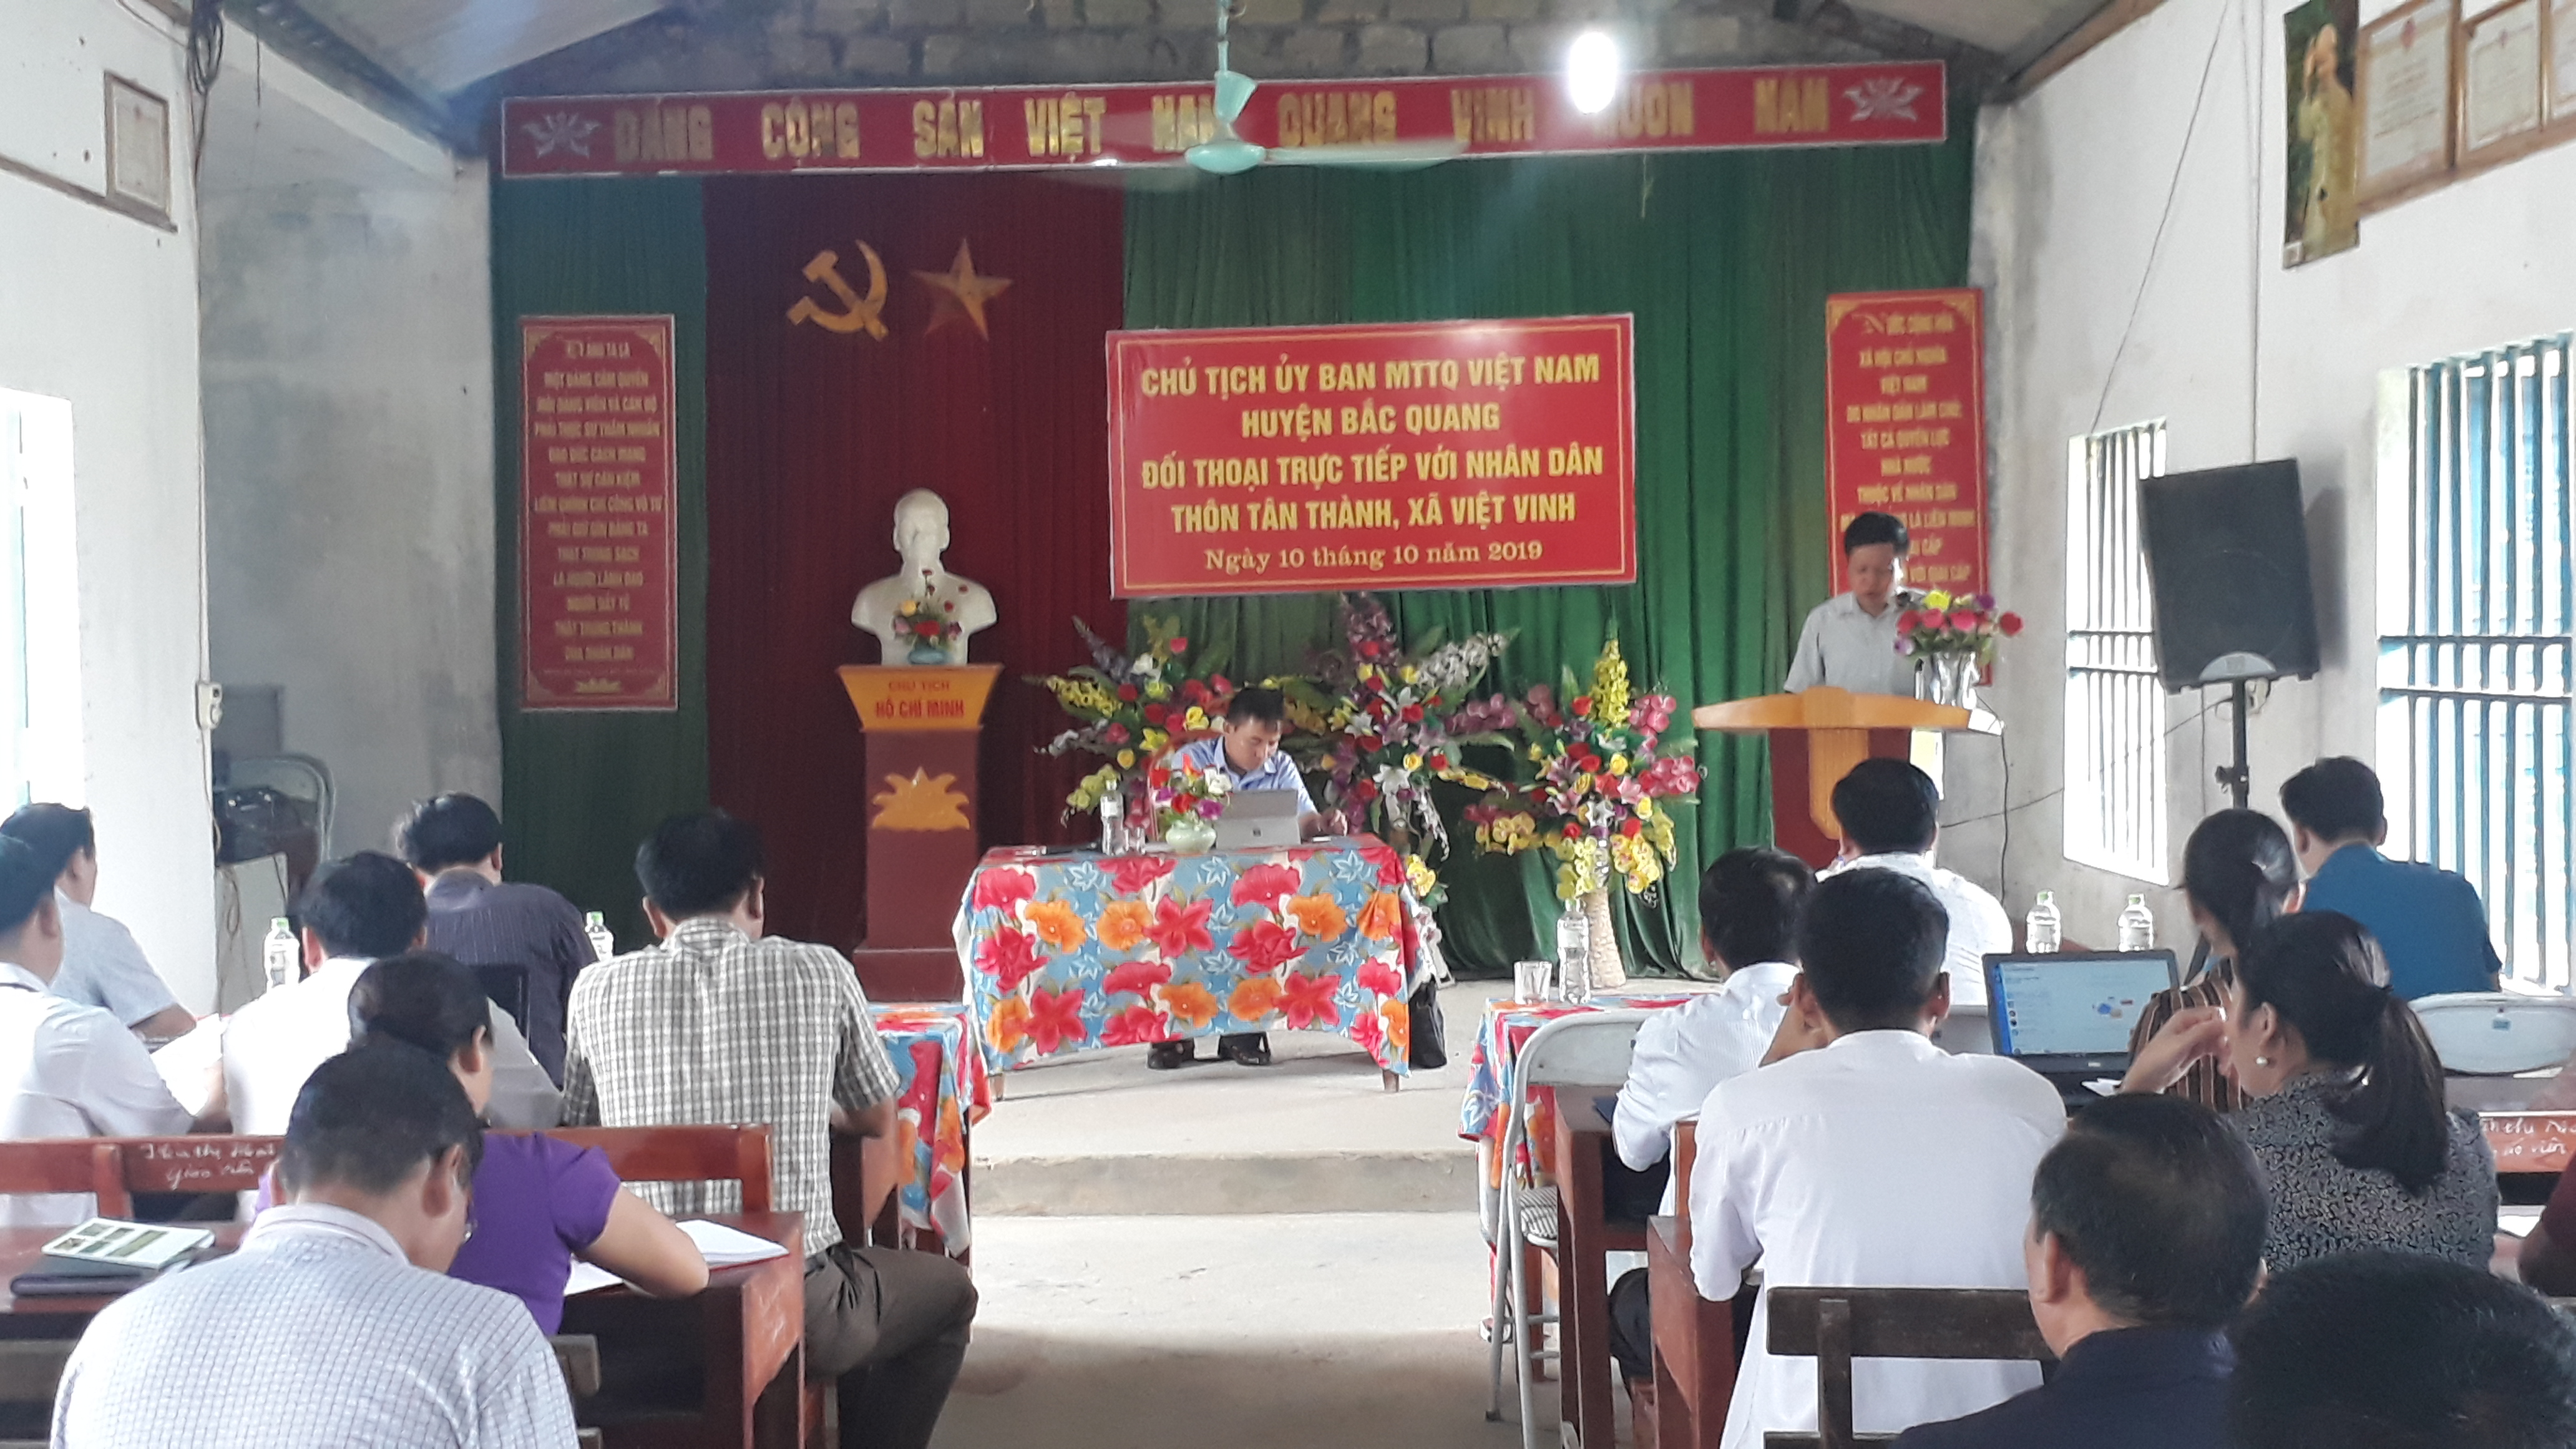 Chủ tịch UBMTTQVN huyện Bắc Quang đối thoại trực tiếp với nhân dân thôn Tân Thành xã Việt Vinh.